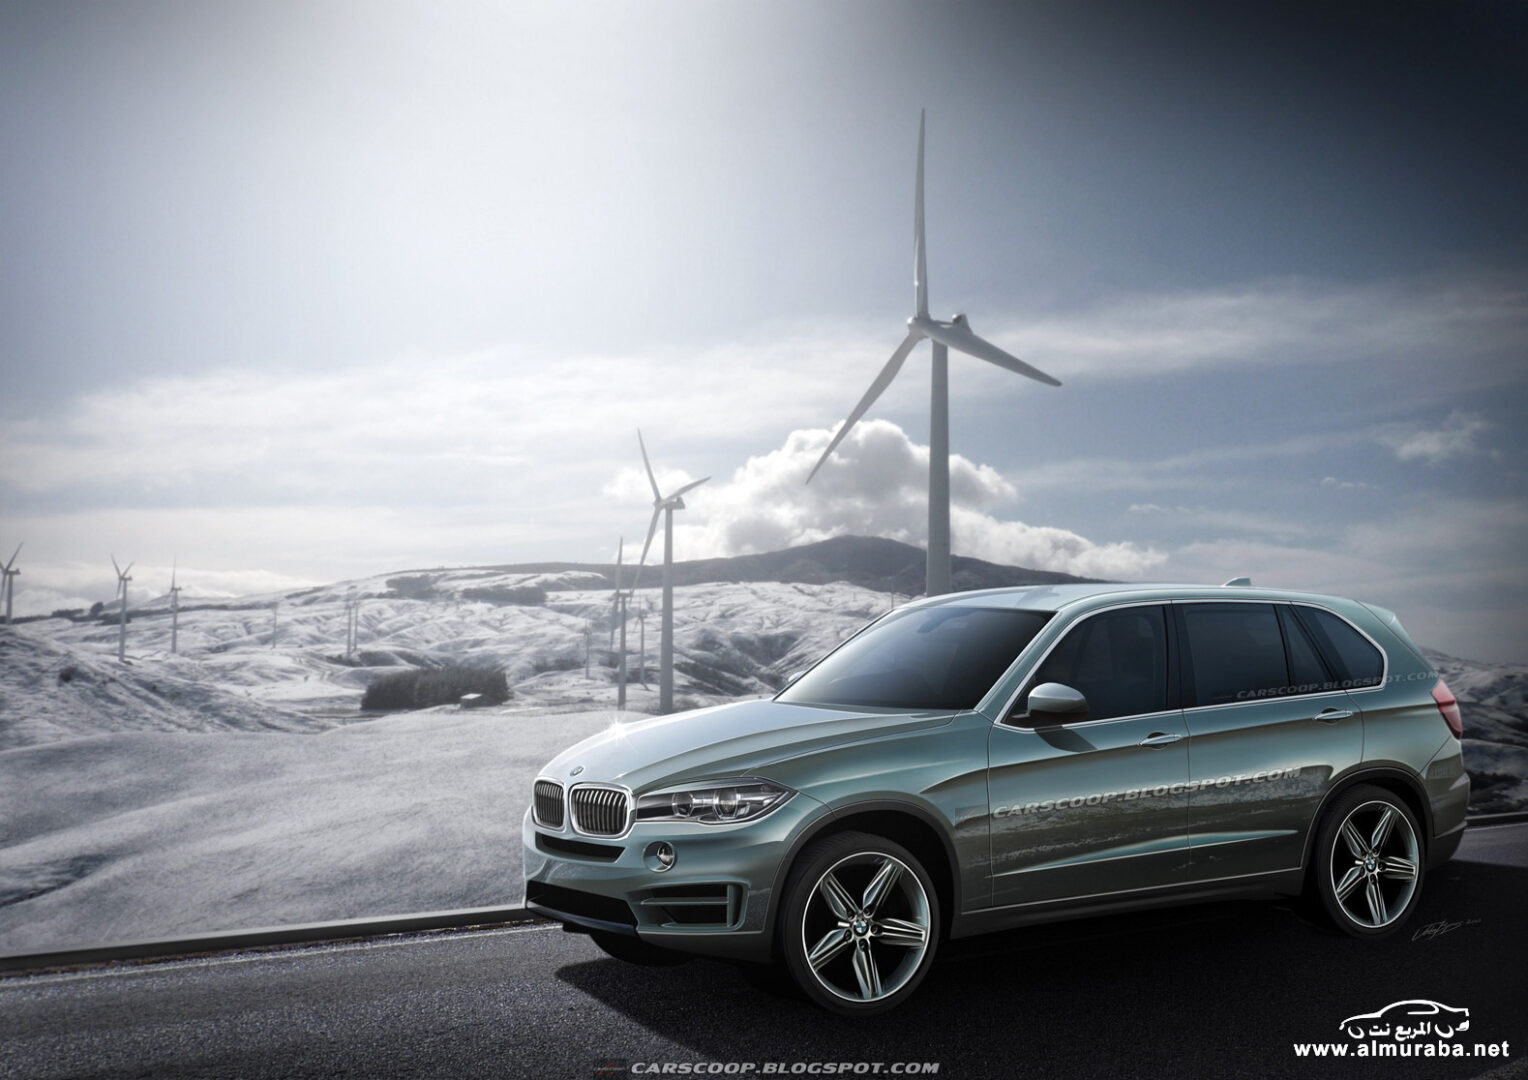 بي ام دبليو اكس فايف 2014 في أول صور له والتي ستحصل على تطويرات كبيرة BMW X5